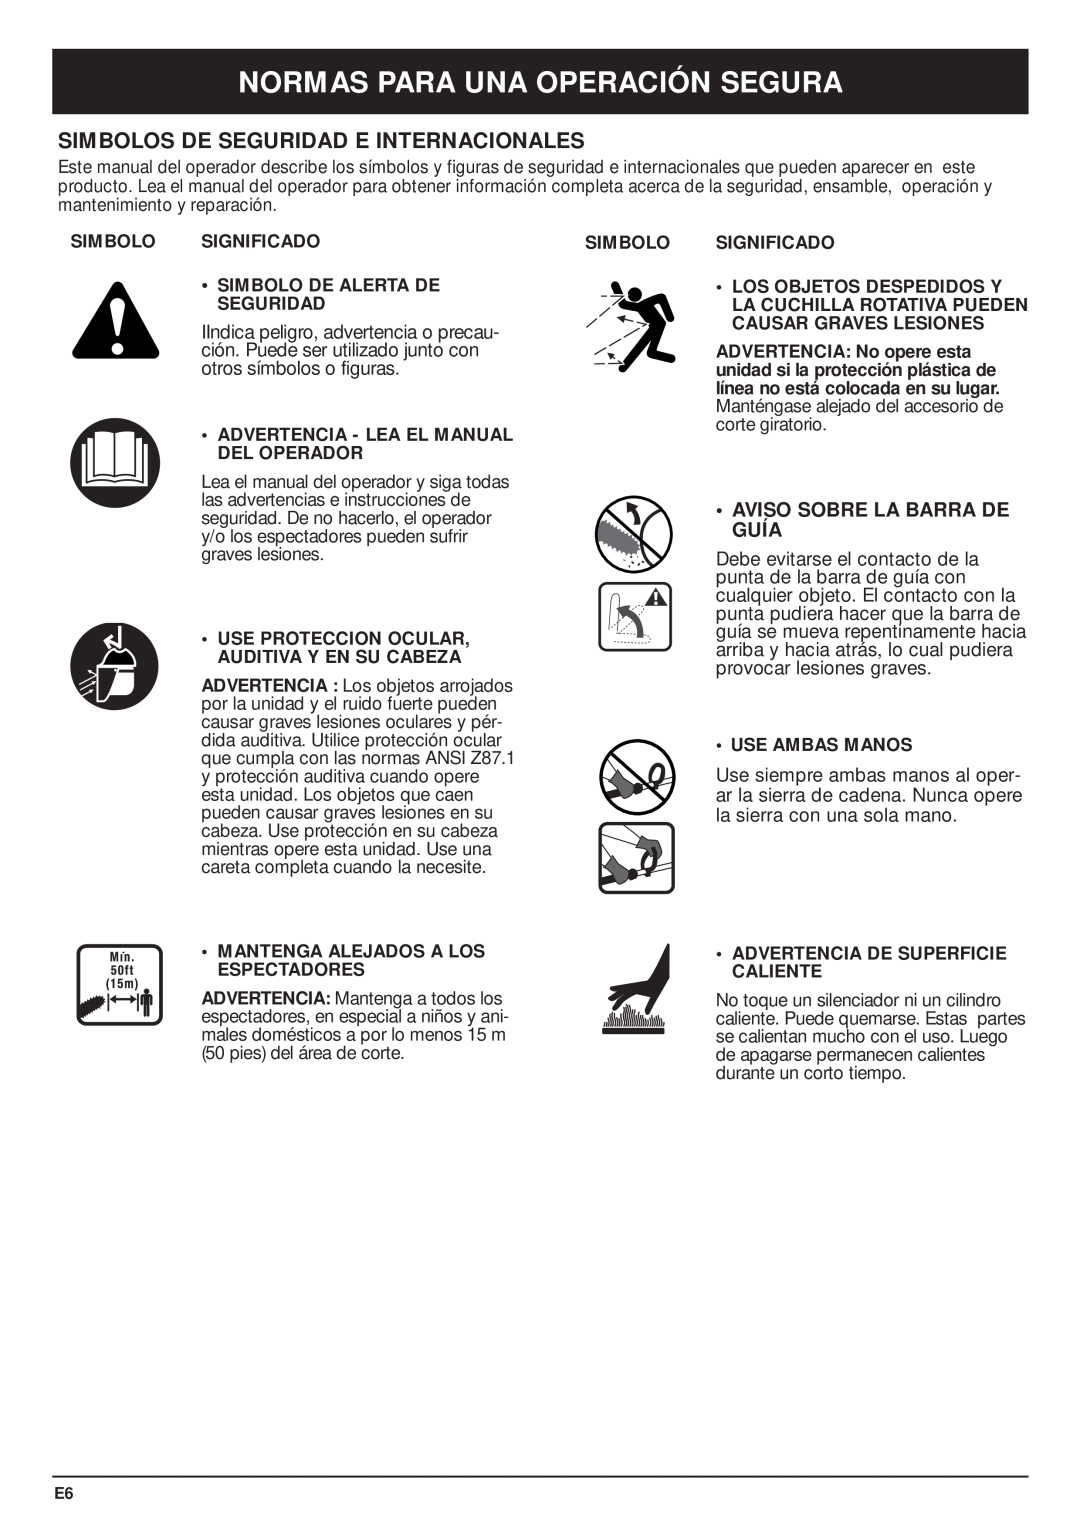 MTD TBPS manual Simbolos De Seguridad E Internacionales, Aviso Sobre La Barra De Guía, Normas Para Una Operación Segura 